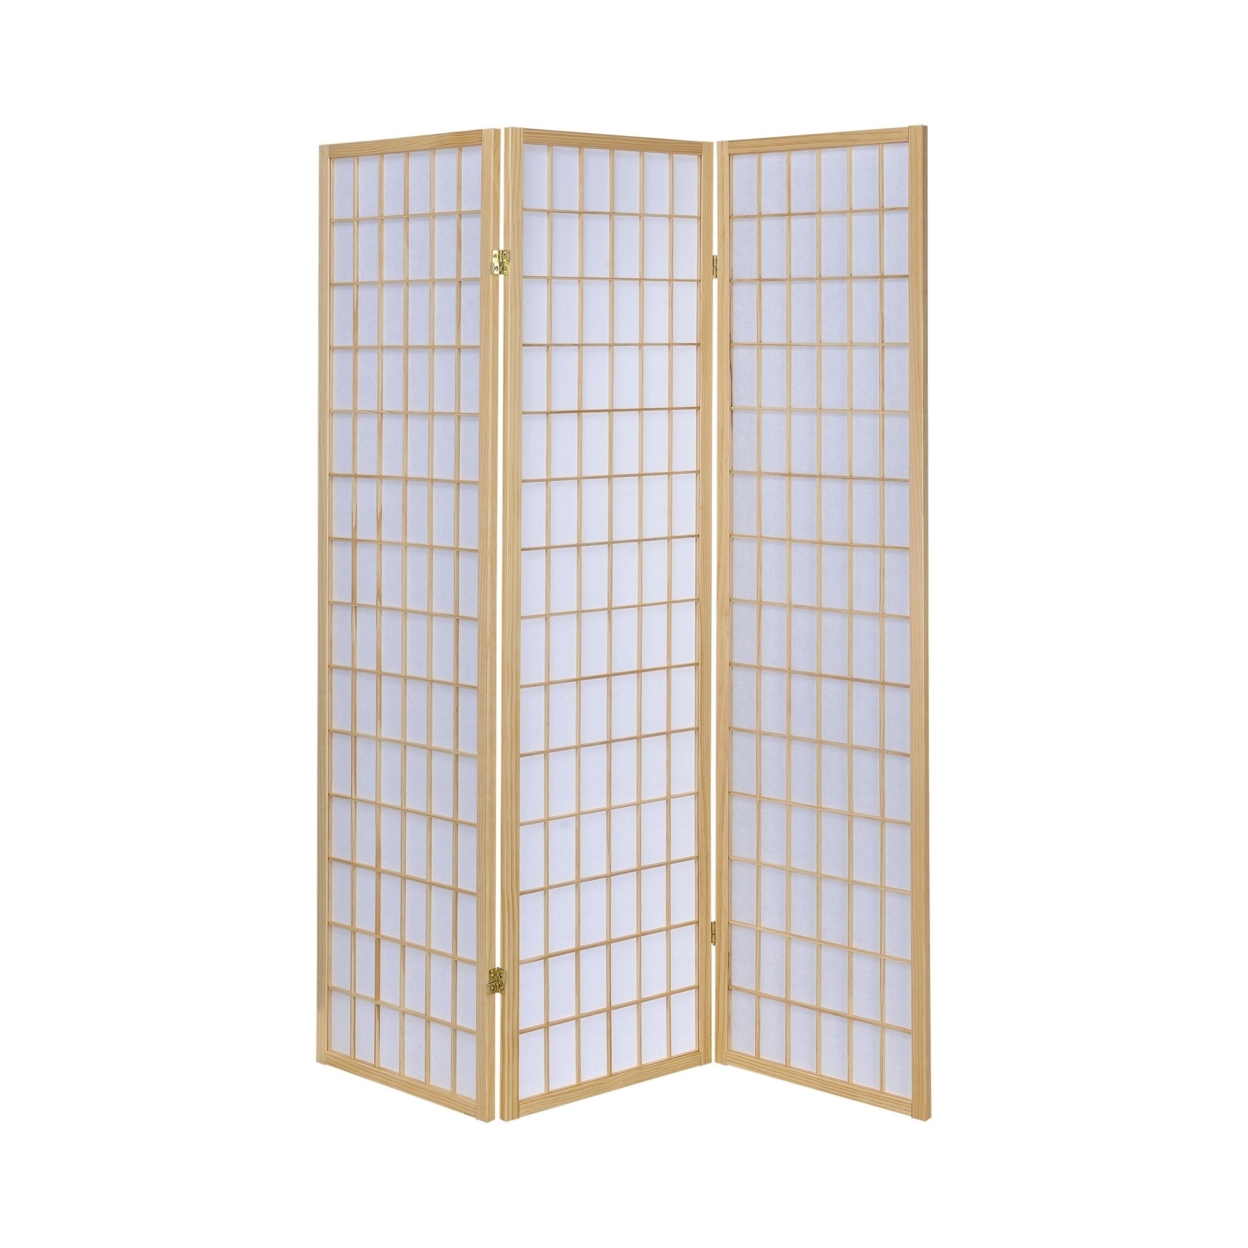 3 Panel Foldable Wooden Frame Room Divider With Grid Design, Brown- Saltoro Sherpi